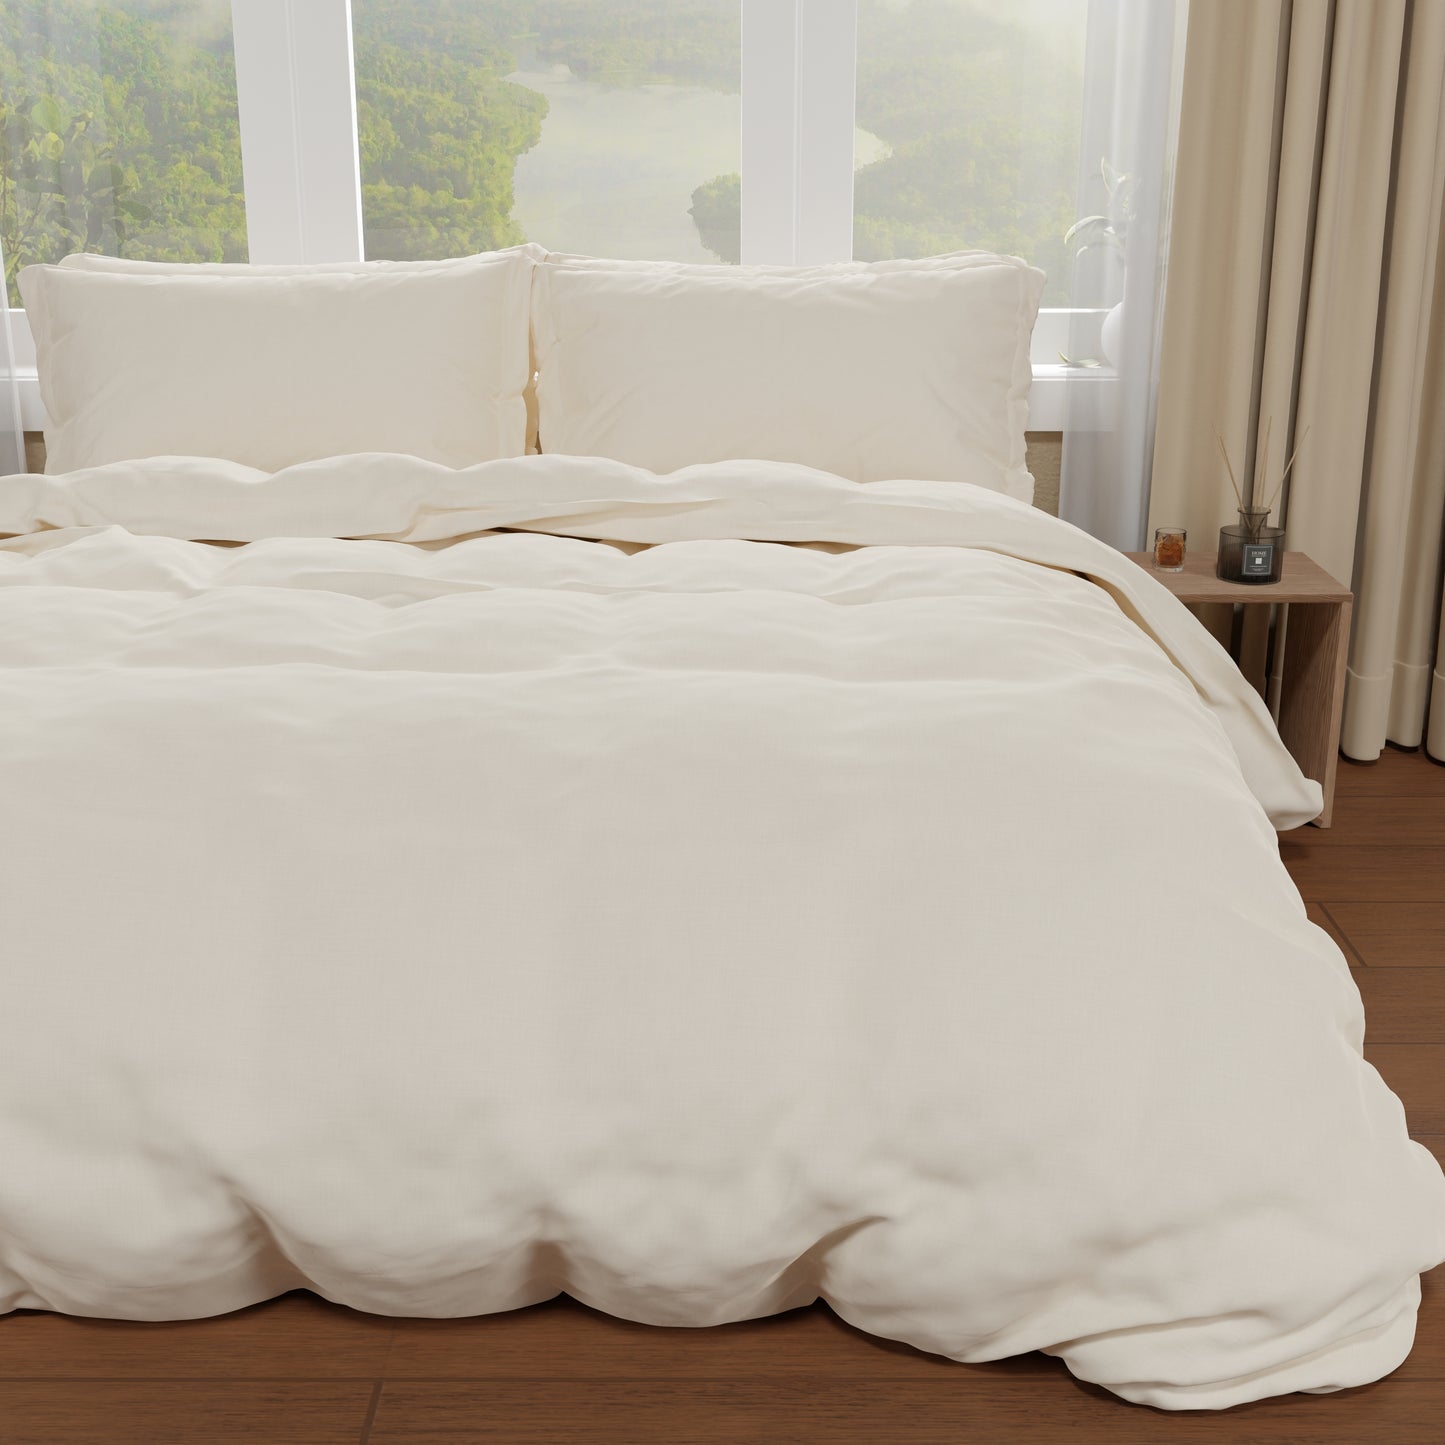 Double Duvet Cover, Duvet Cover and Pillowcases, Plain Cream